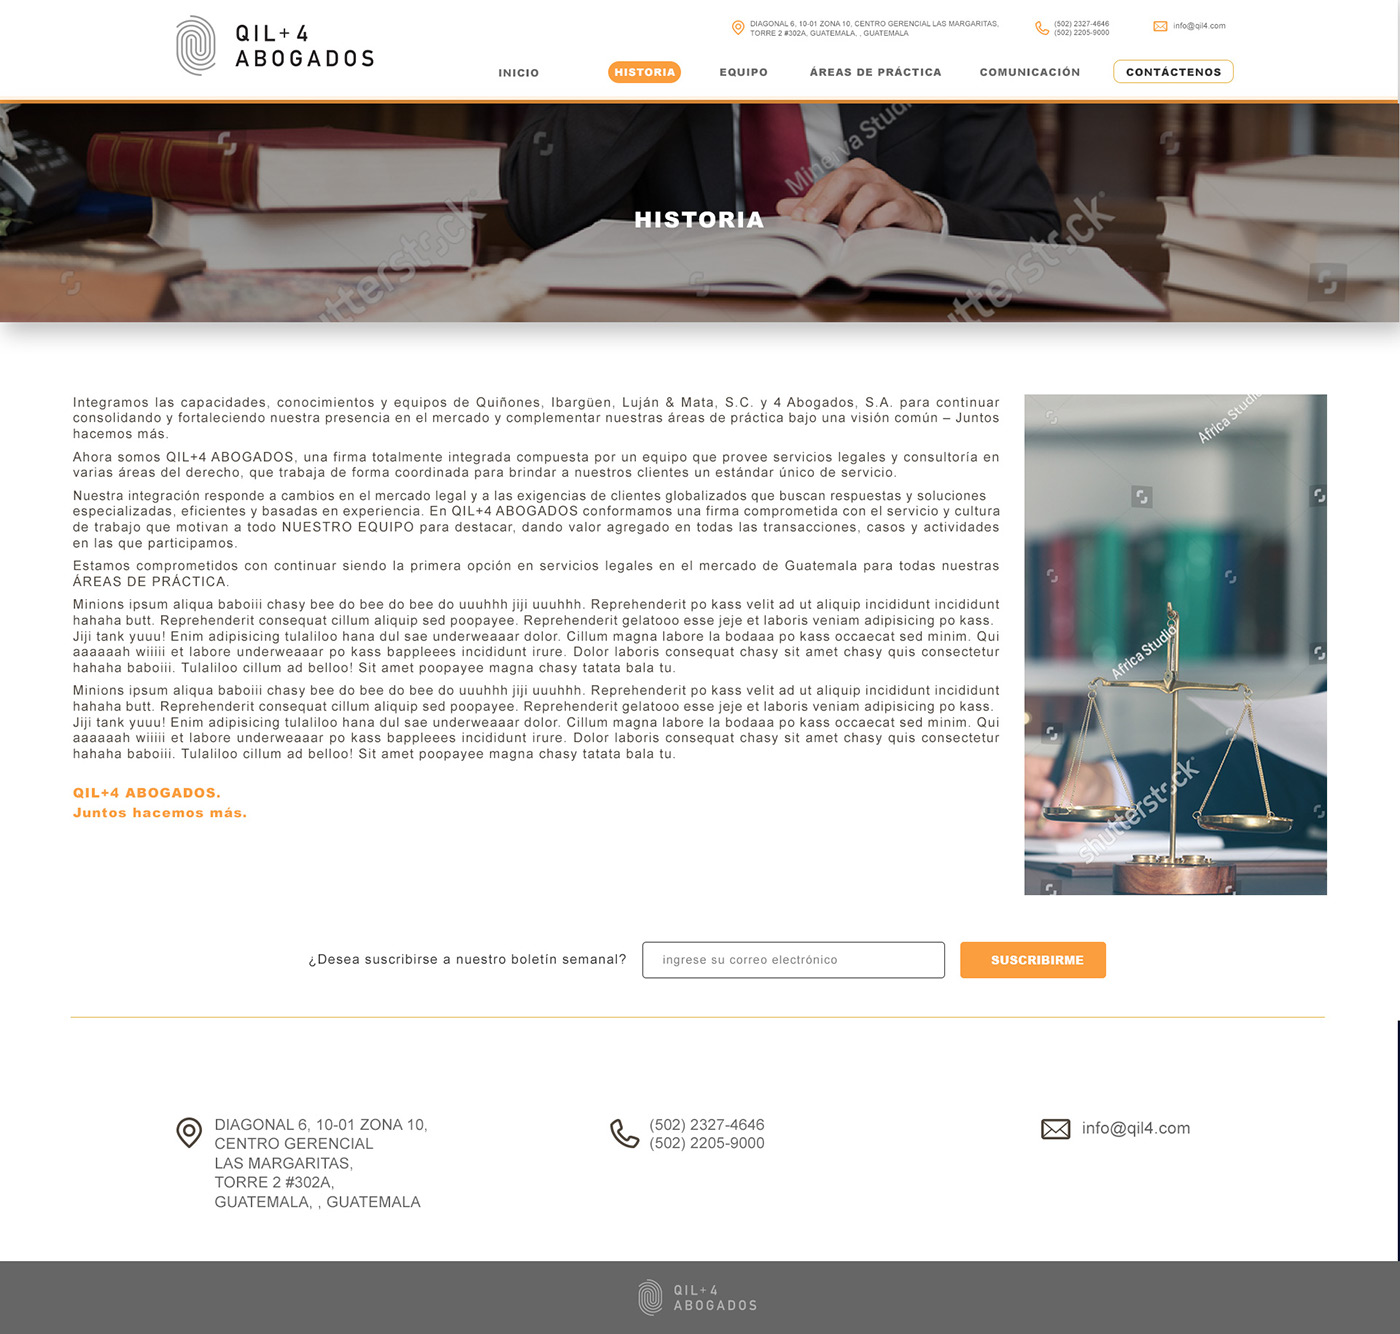 Website ux lawyer design digital